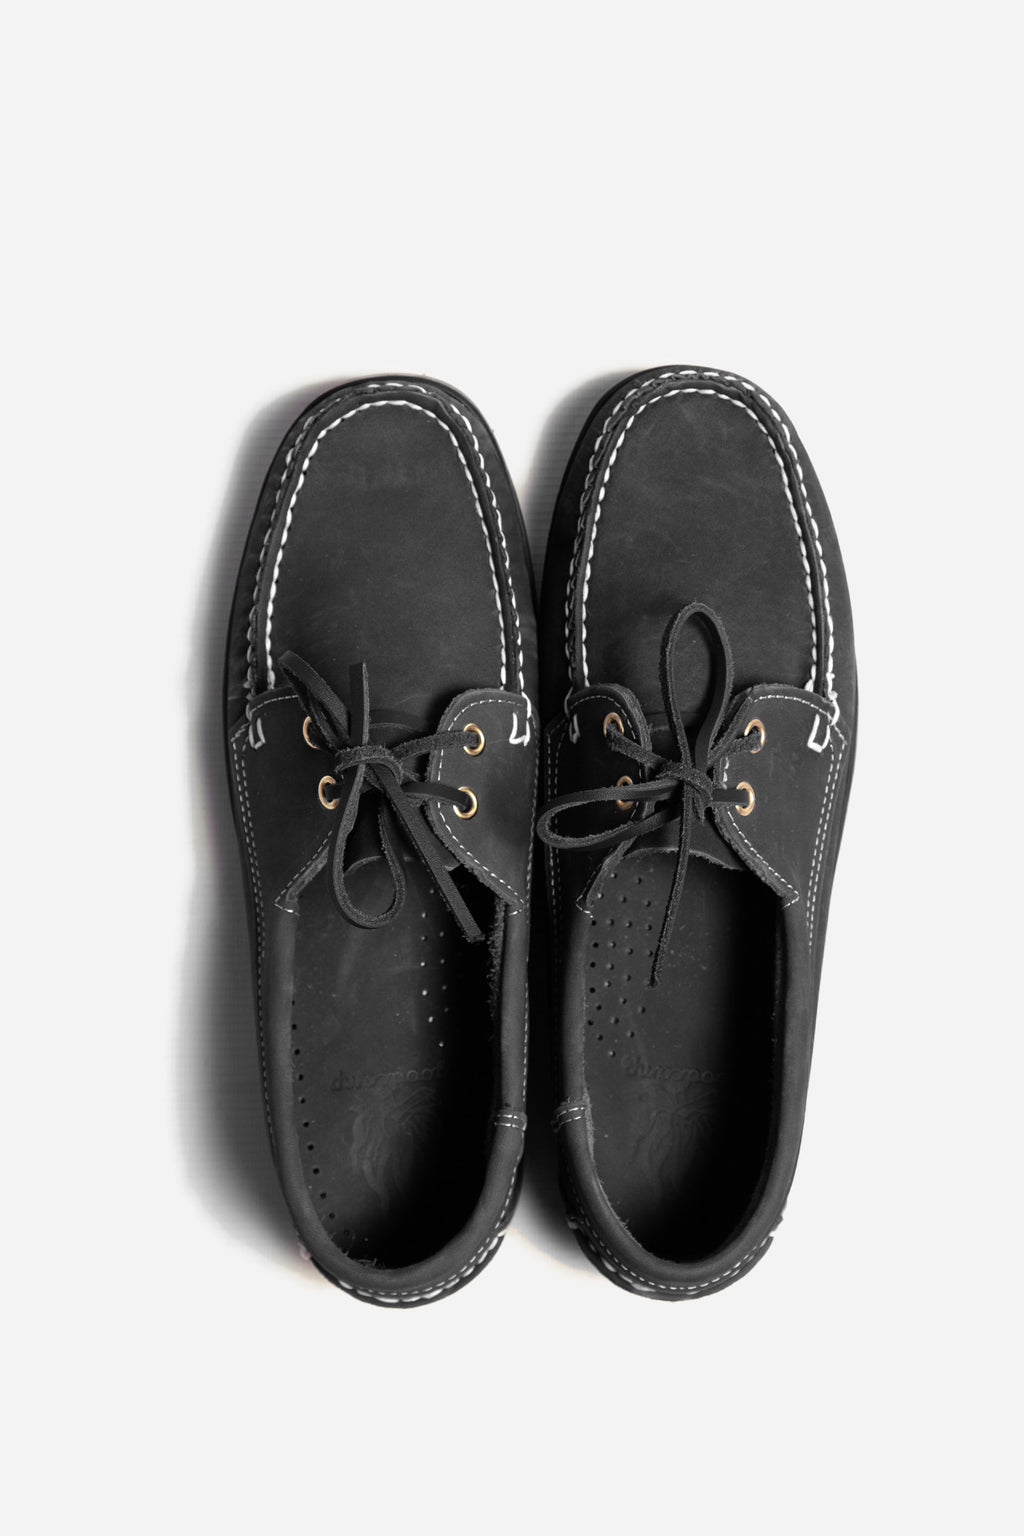 Goodcamp - Deck Loafer Shoes - Black